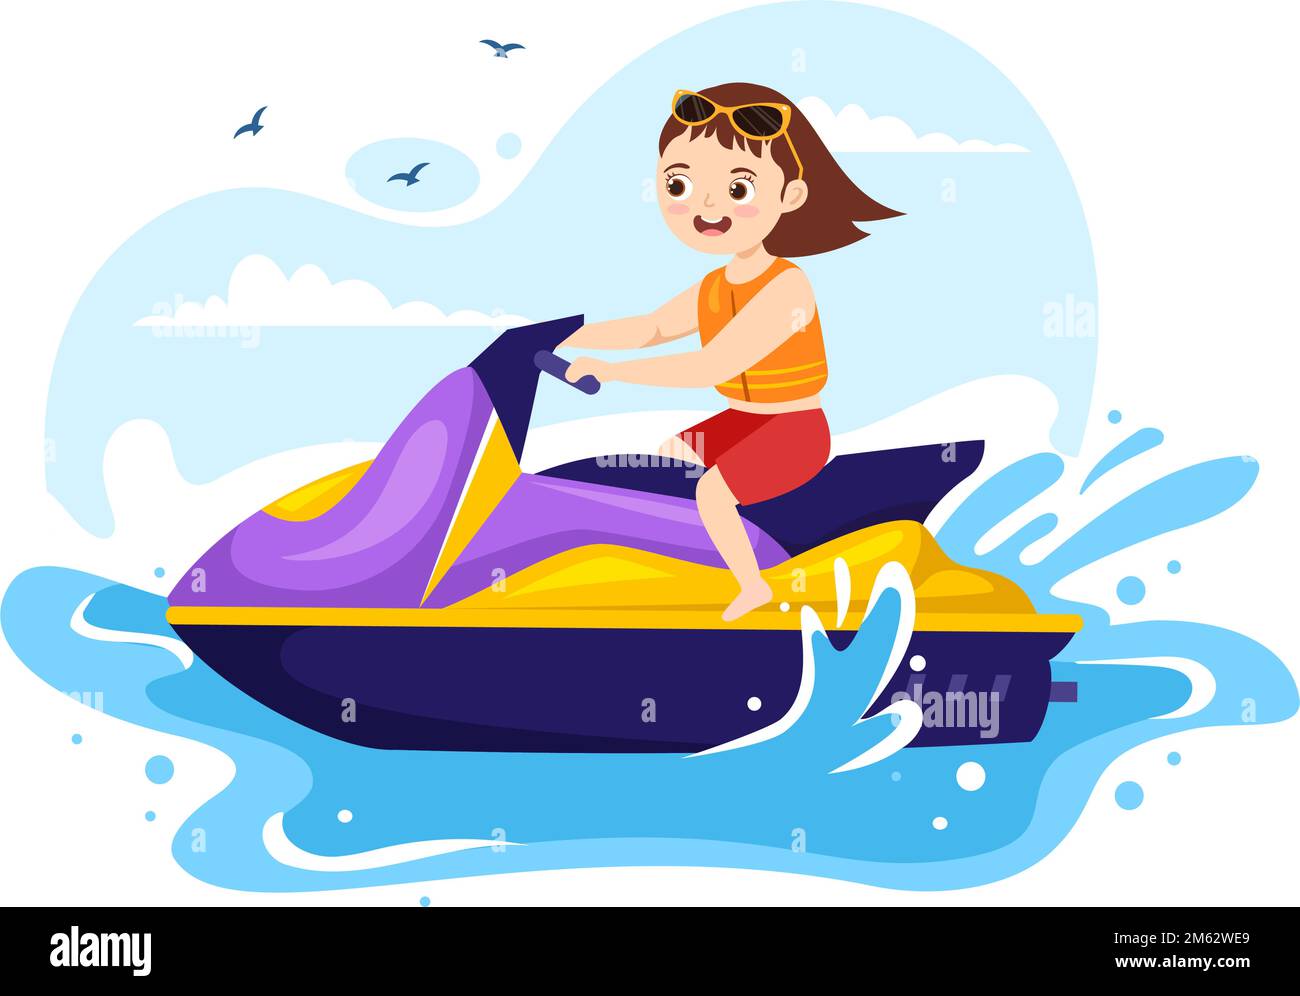 Kinder fahren Jet Ski Illustration Sommerurlaub Erholung, Extreme Wassersport und Resort Strandaktivität in Hand Drawn Flat Cartoon Vorlage Stock Vektor